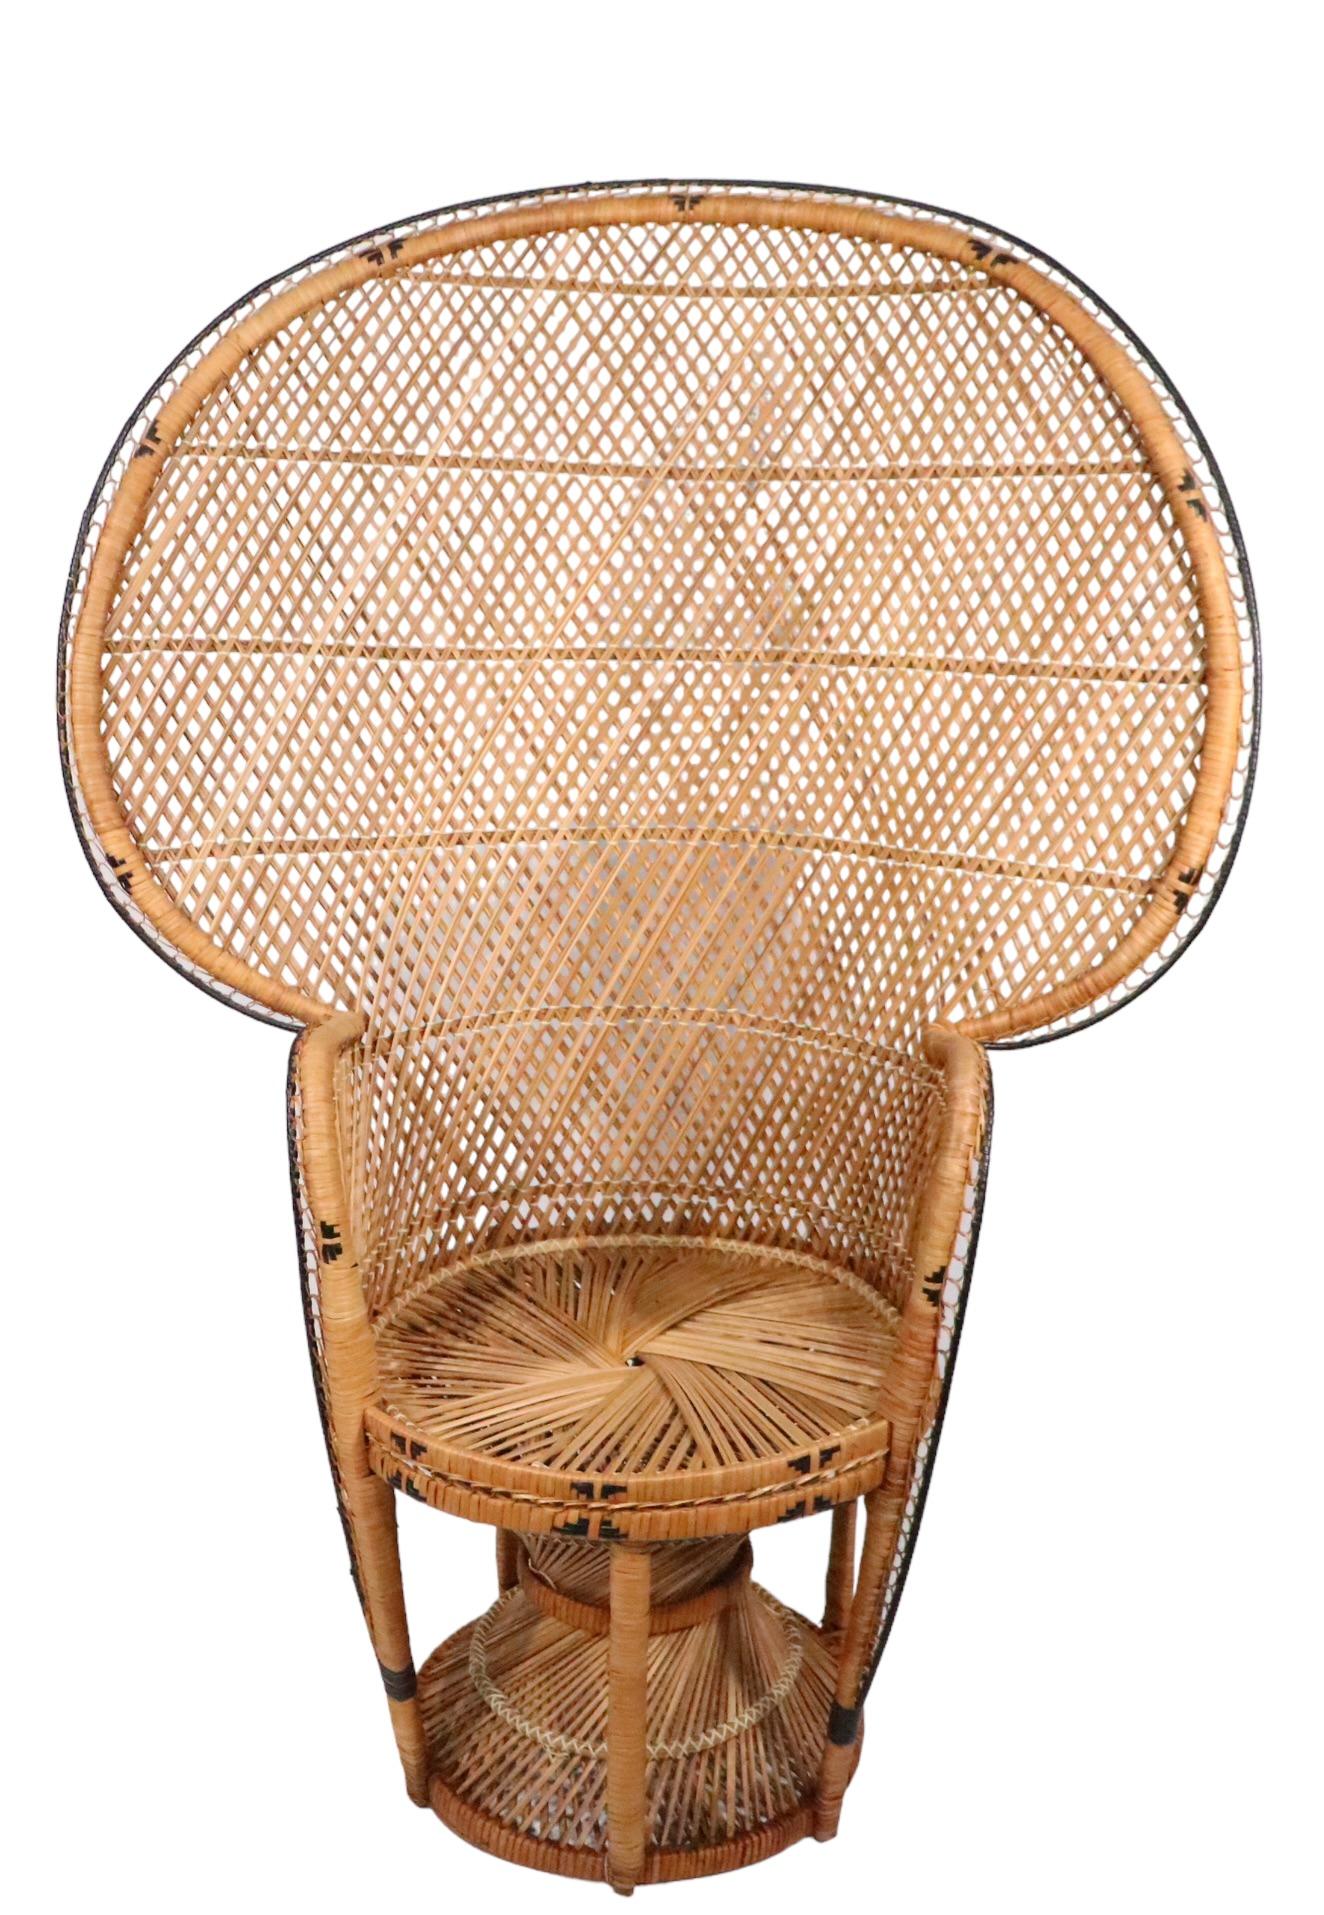 Emmanuelle  Peacock Bamboo Wicker Fan Chair c. 1960/1970's For Sale 7